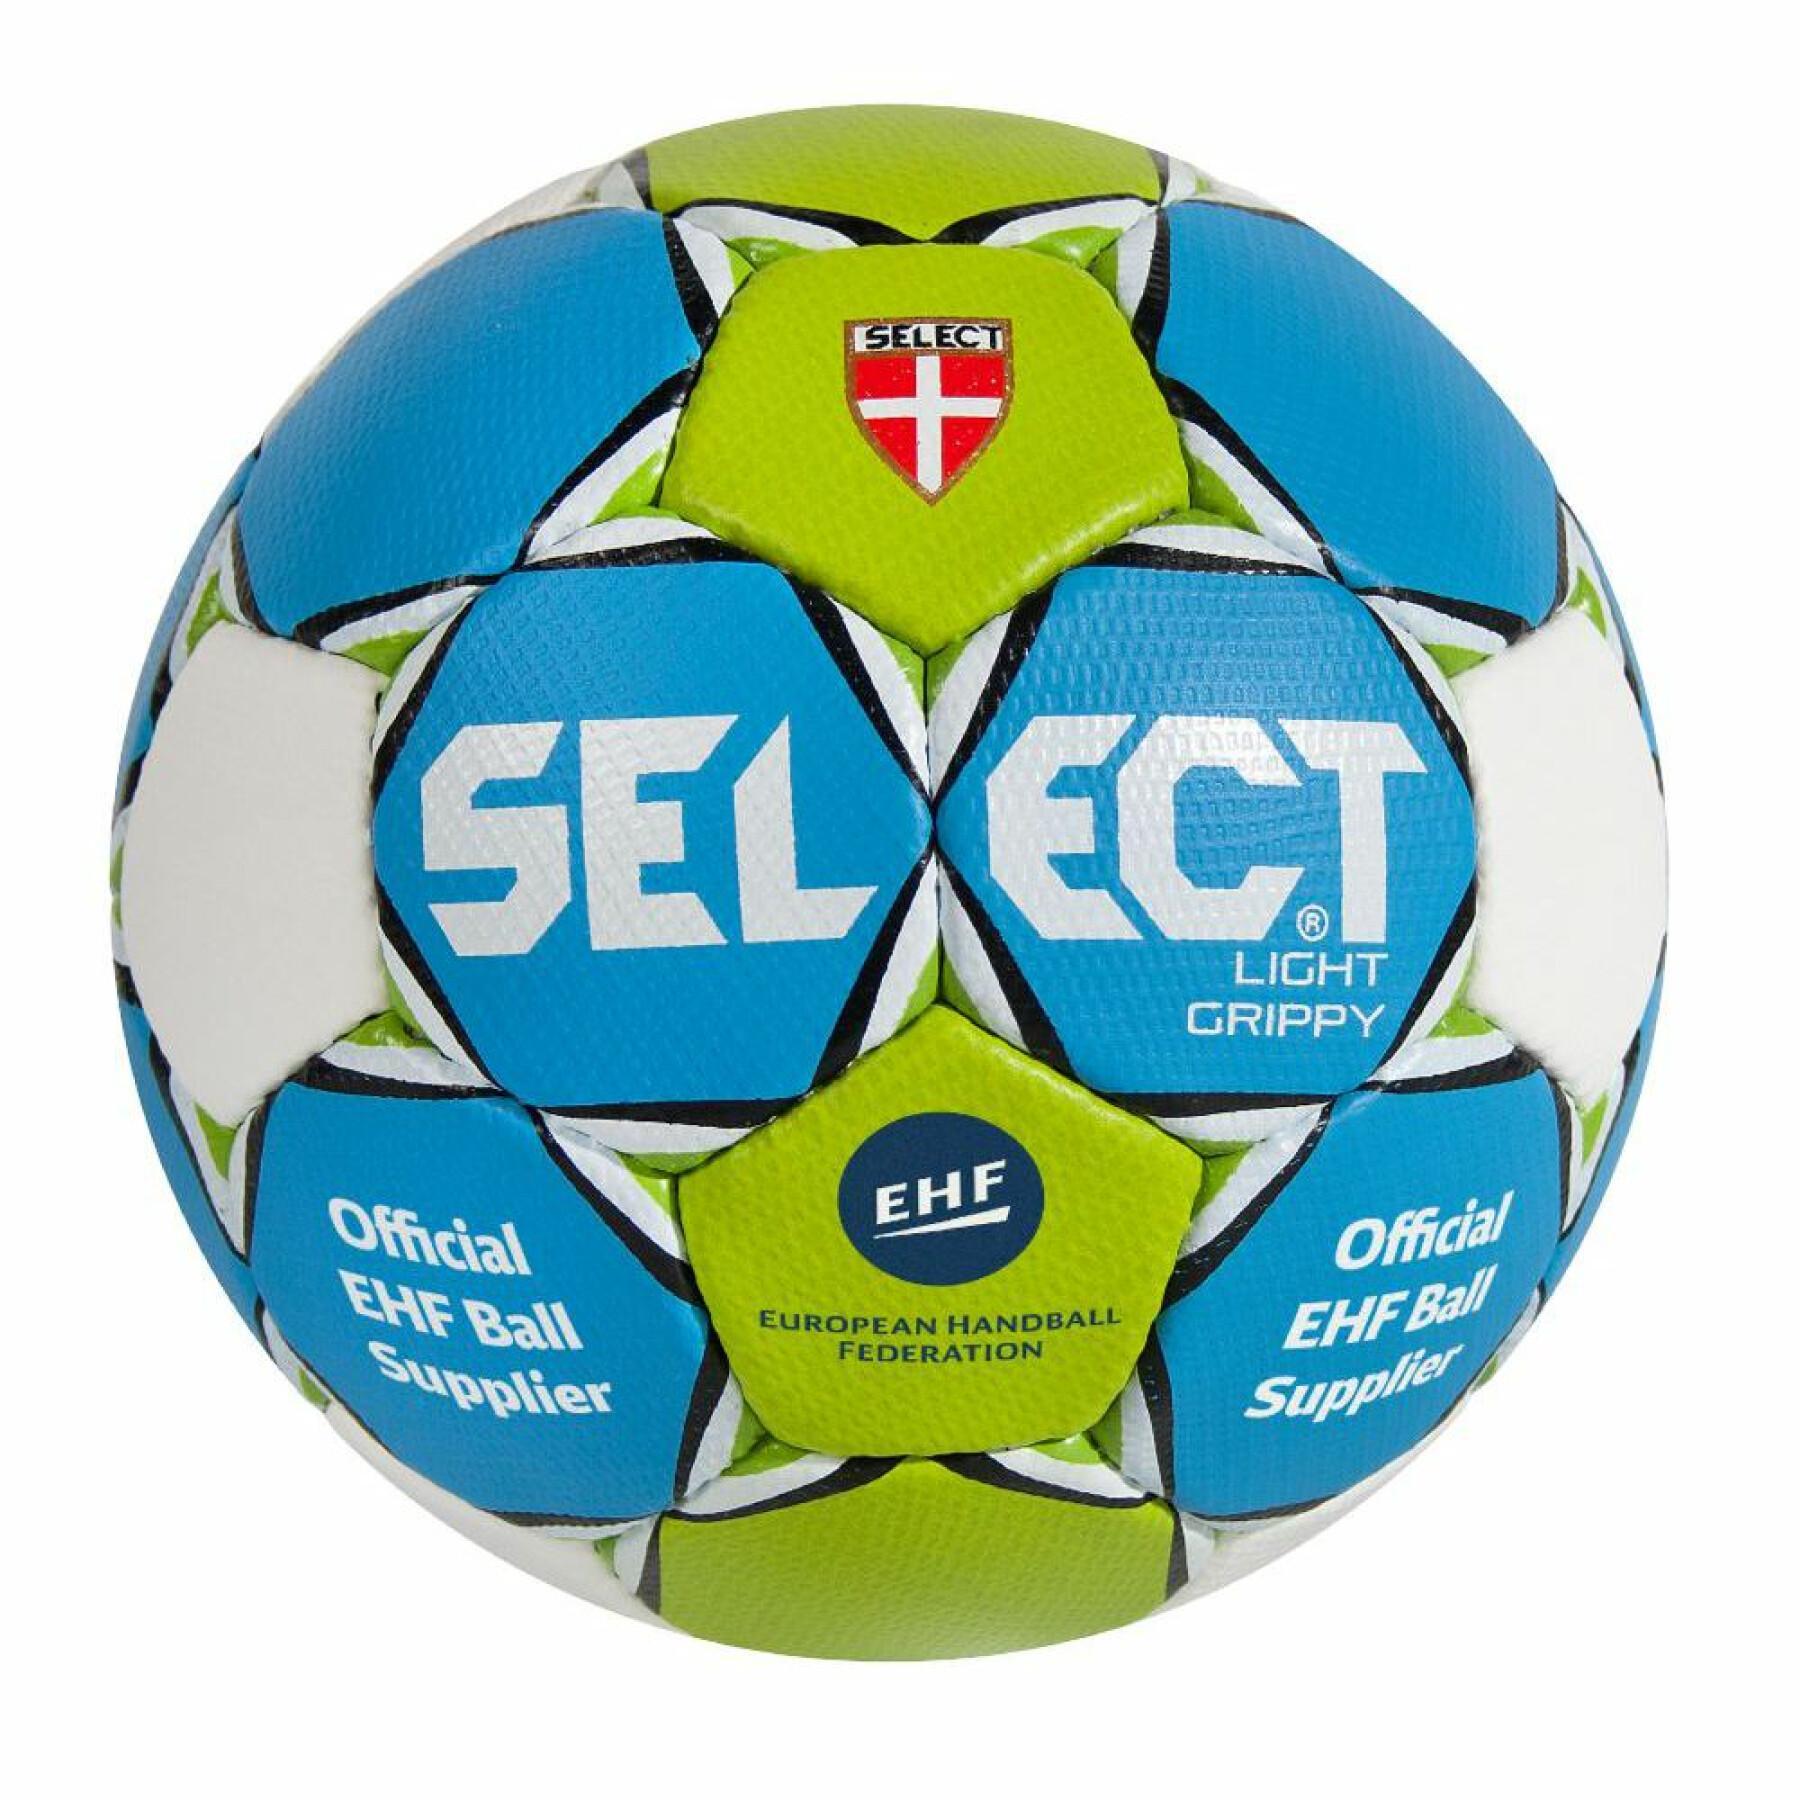 Balon Select Light Grippy bleu/vert/blanc